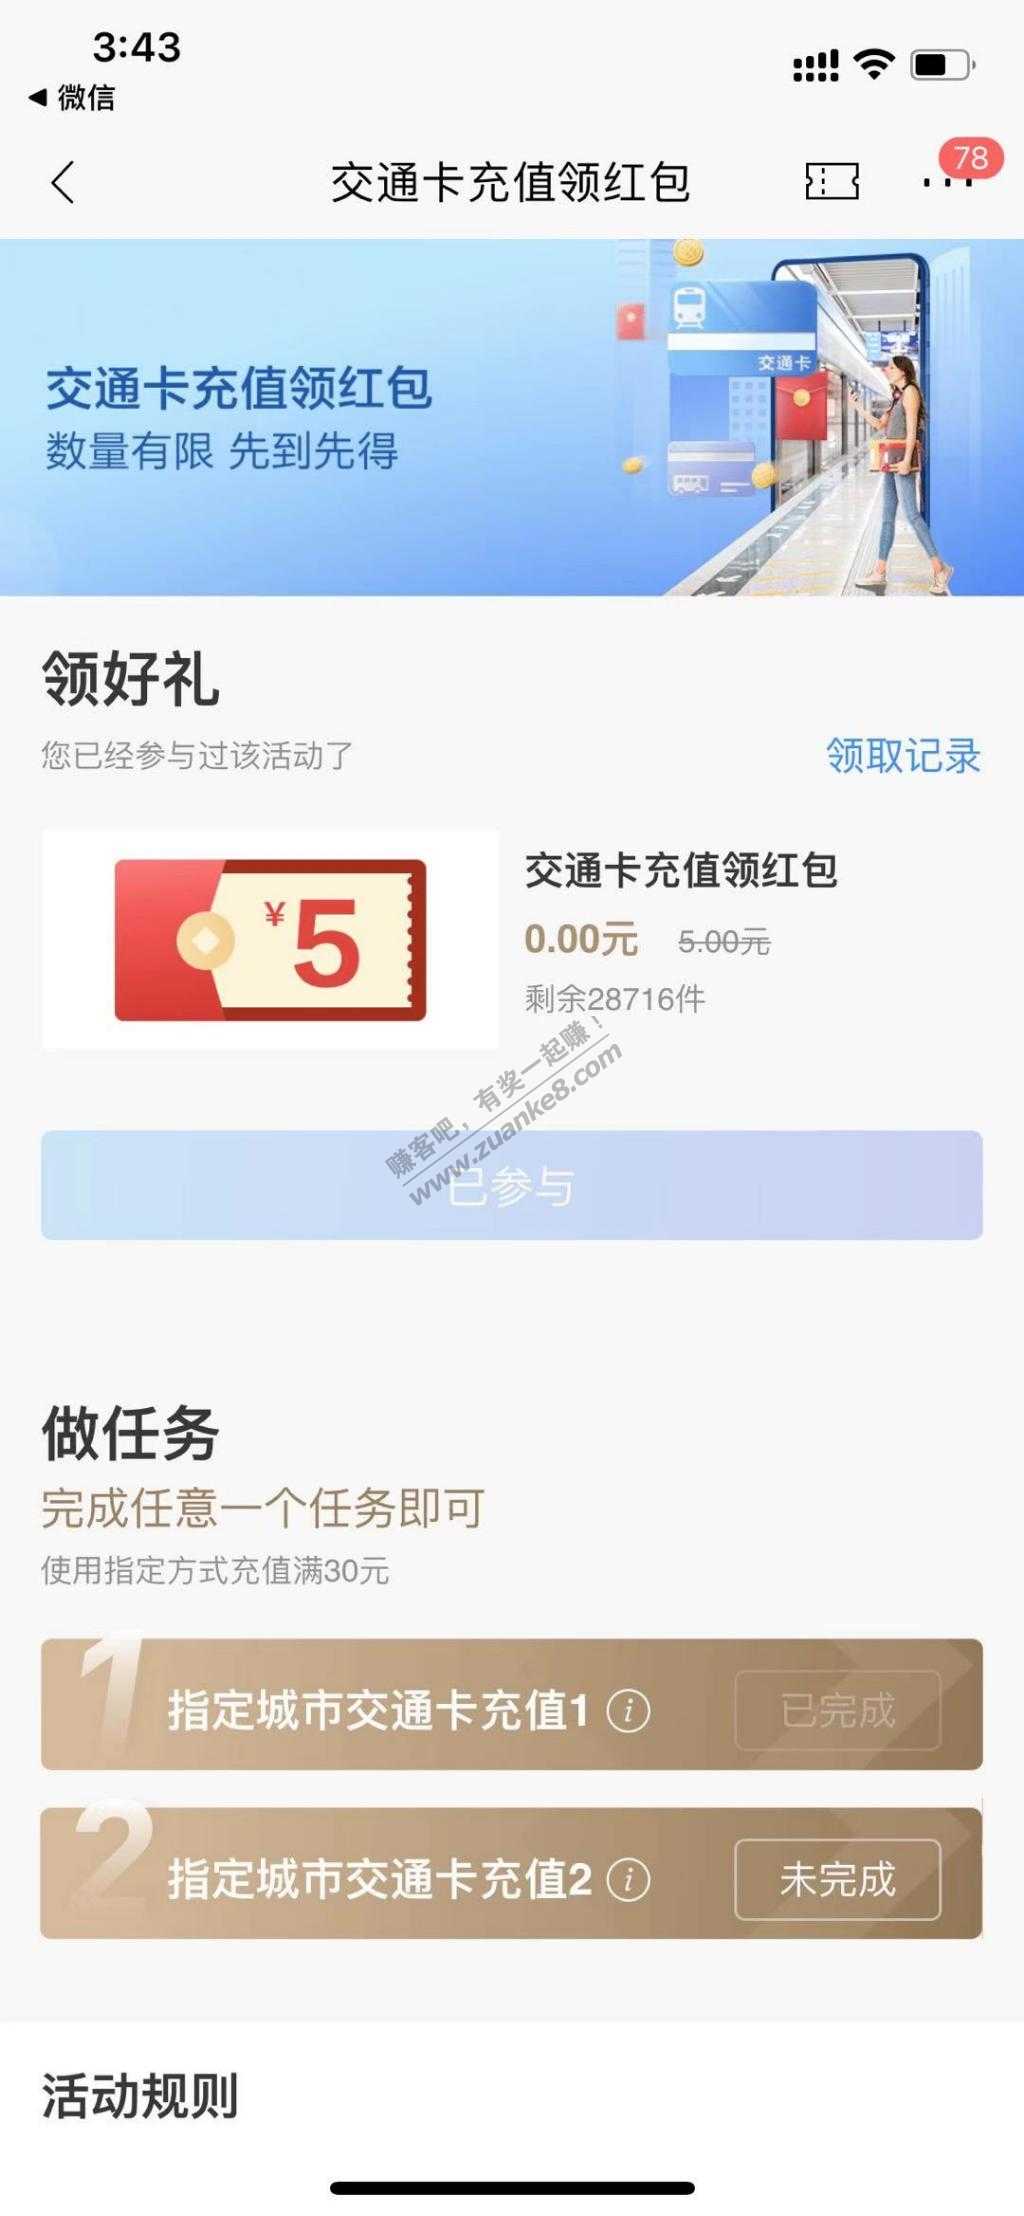 招商银行app  5元-惠小助(52huixz.com)